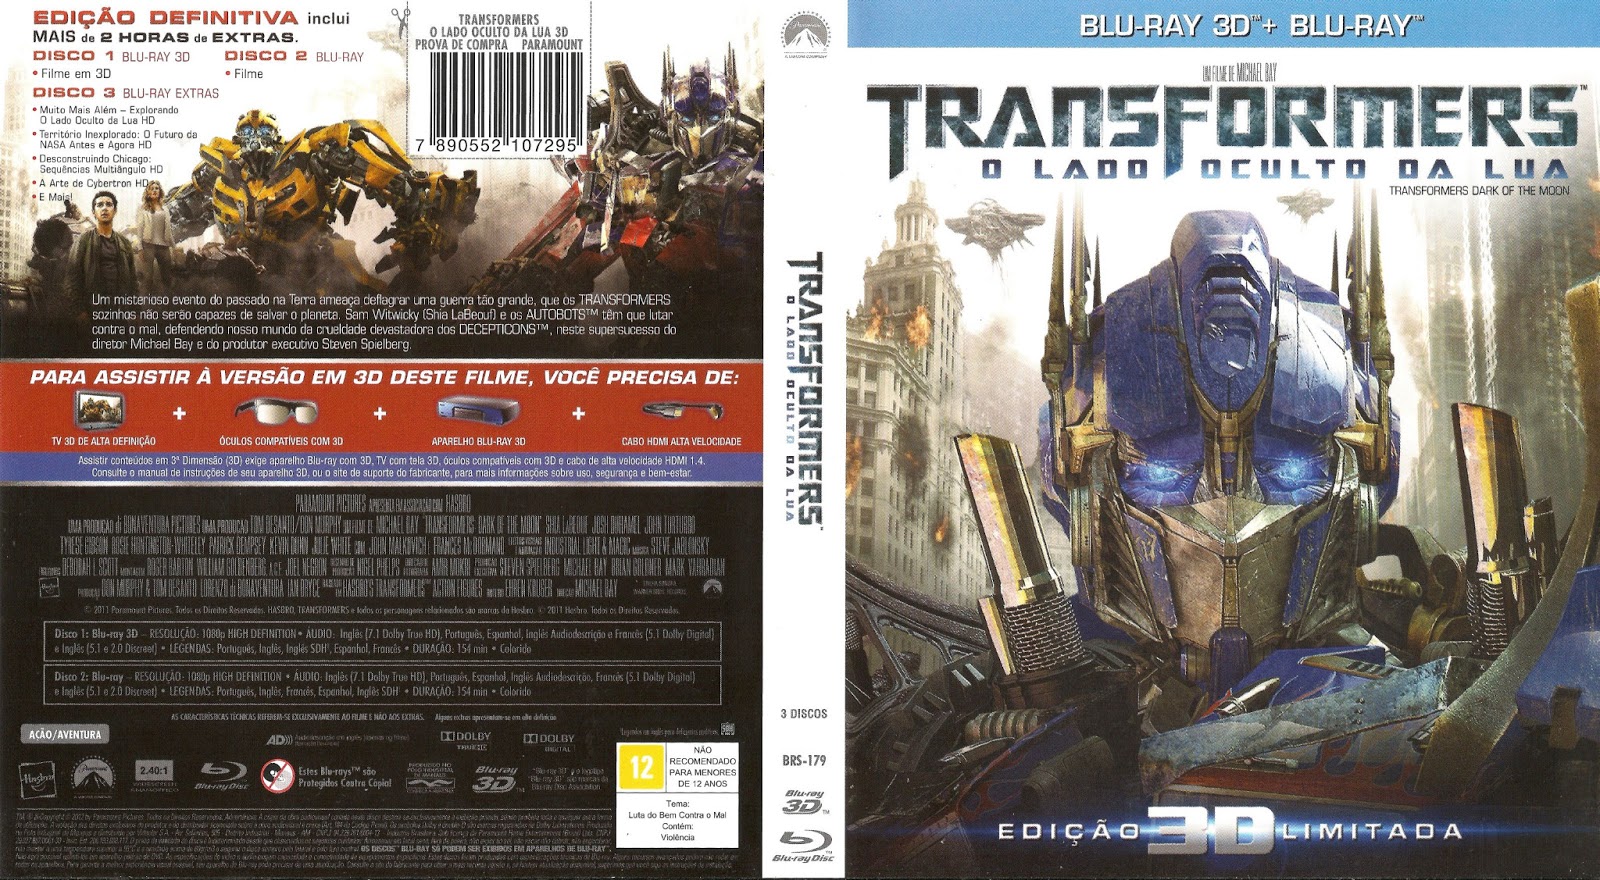 Transformers o Lado Oculto da Lua Blu-ray ORIGINAL LACRADO - paramont -  Filmes - Magazine Luiza